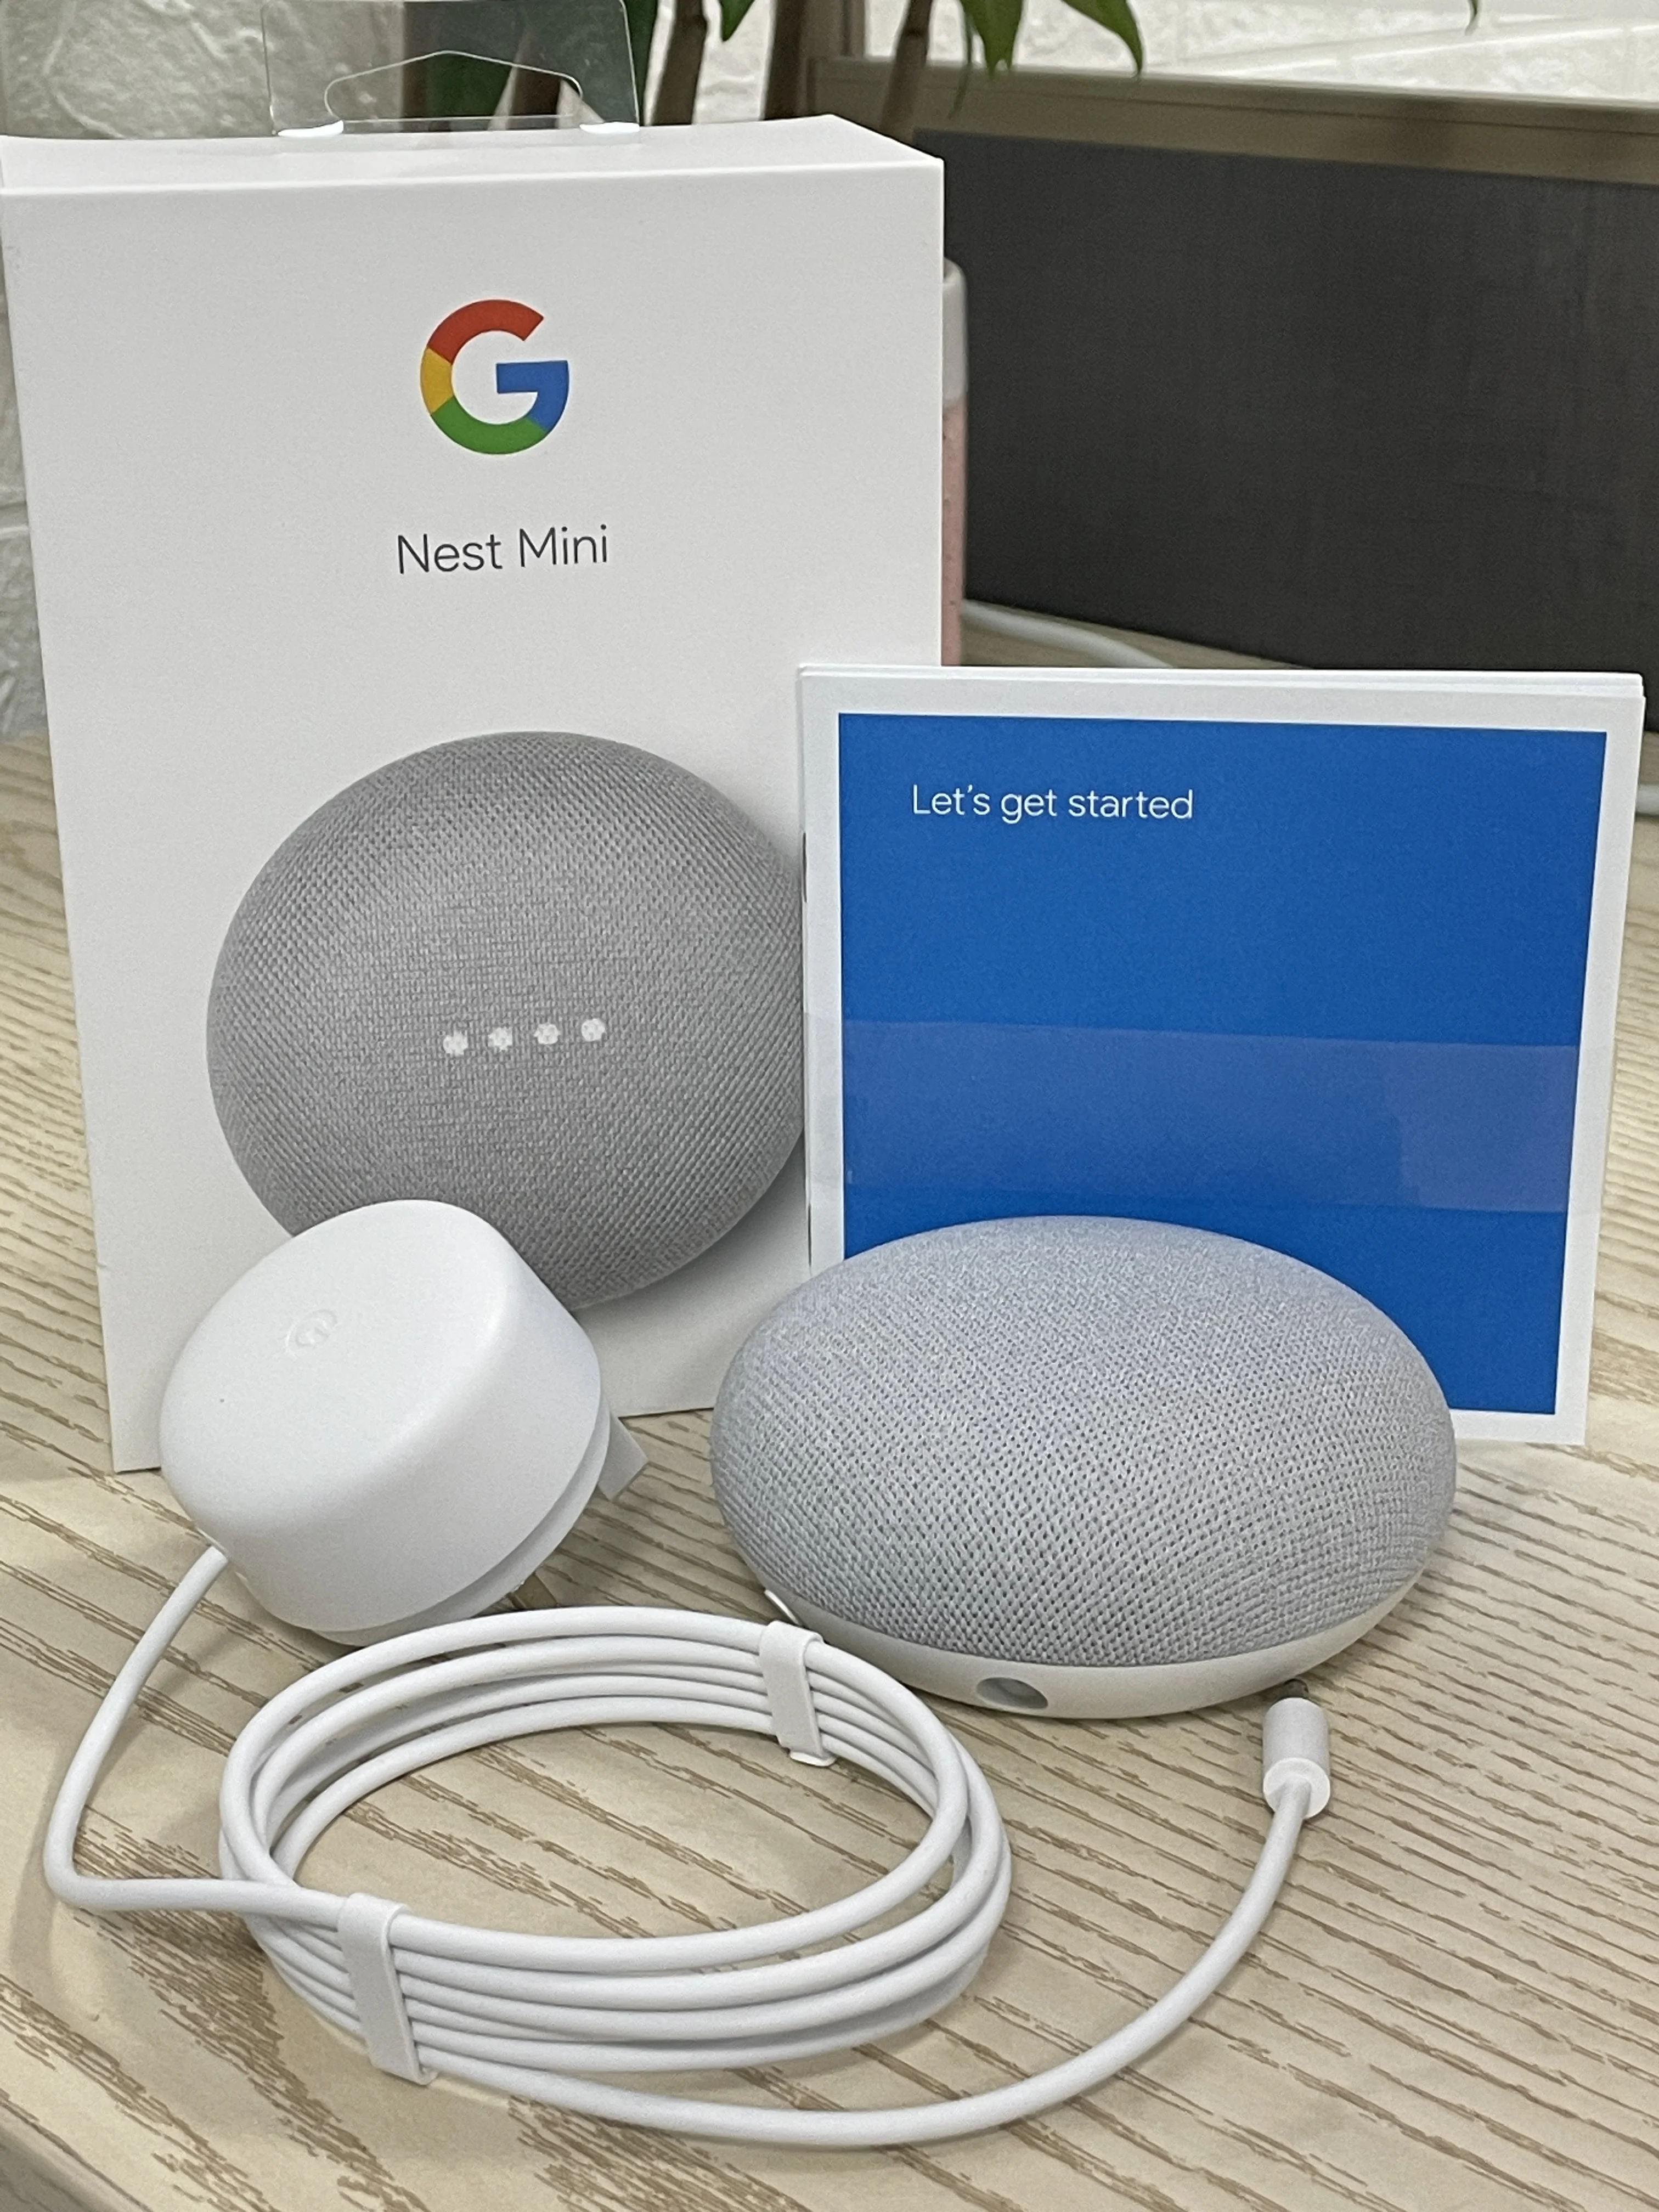 Интеллектуальный динамик Google Nest Mini с функцией Google Assistant (95% новостей)